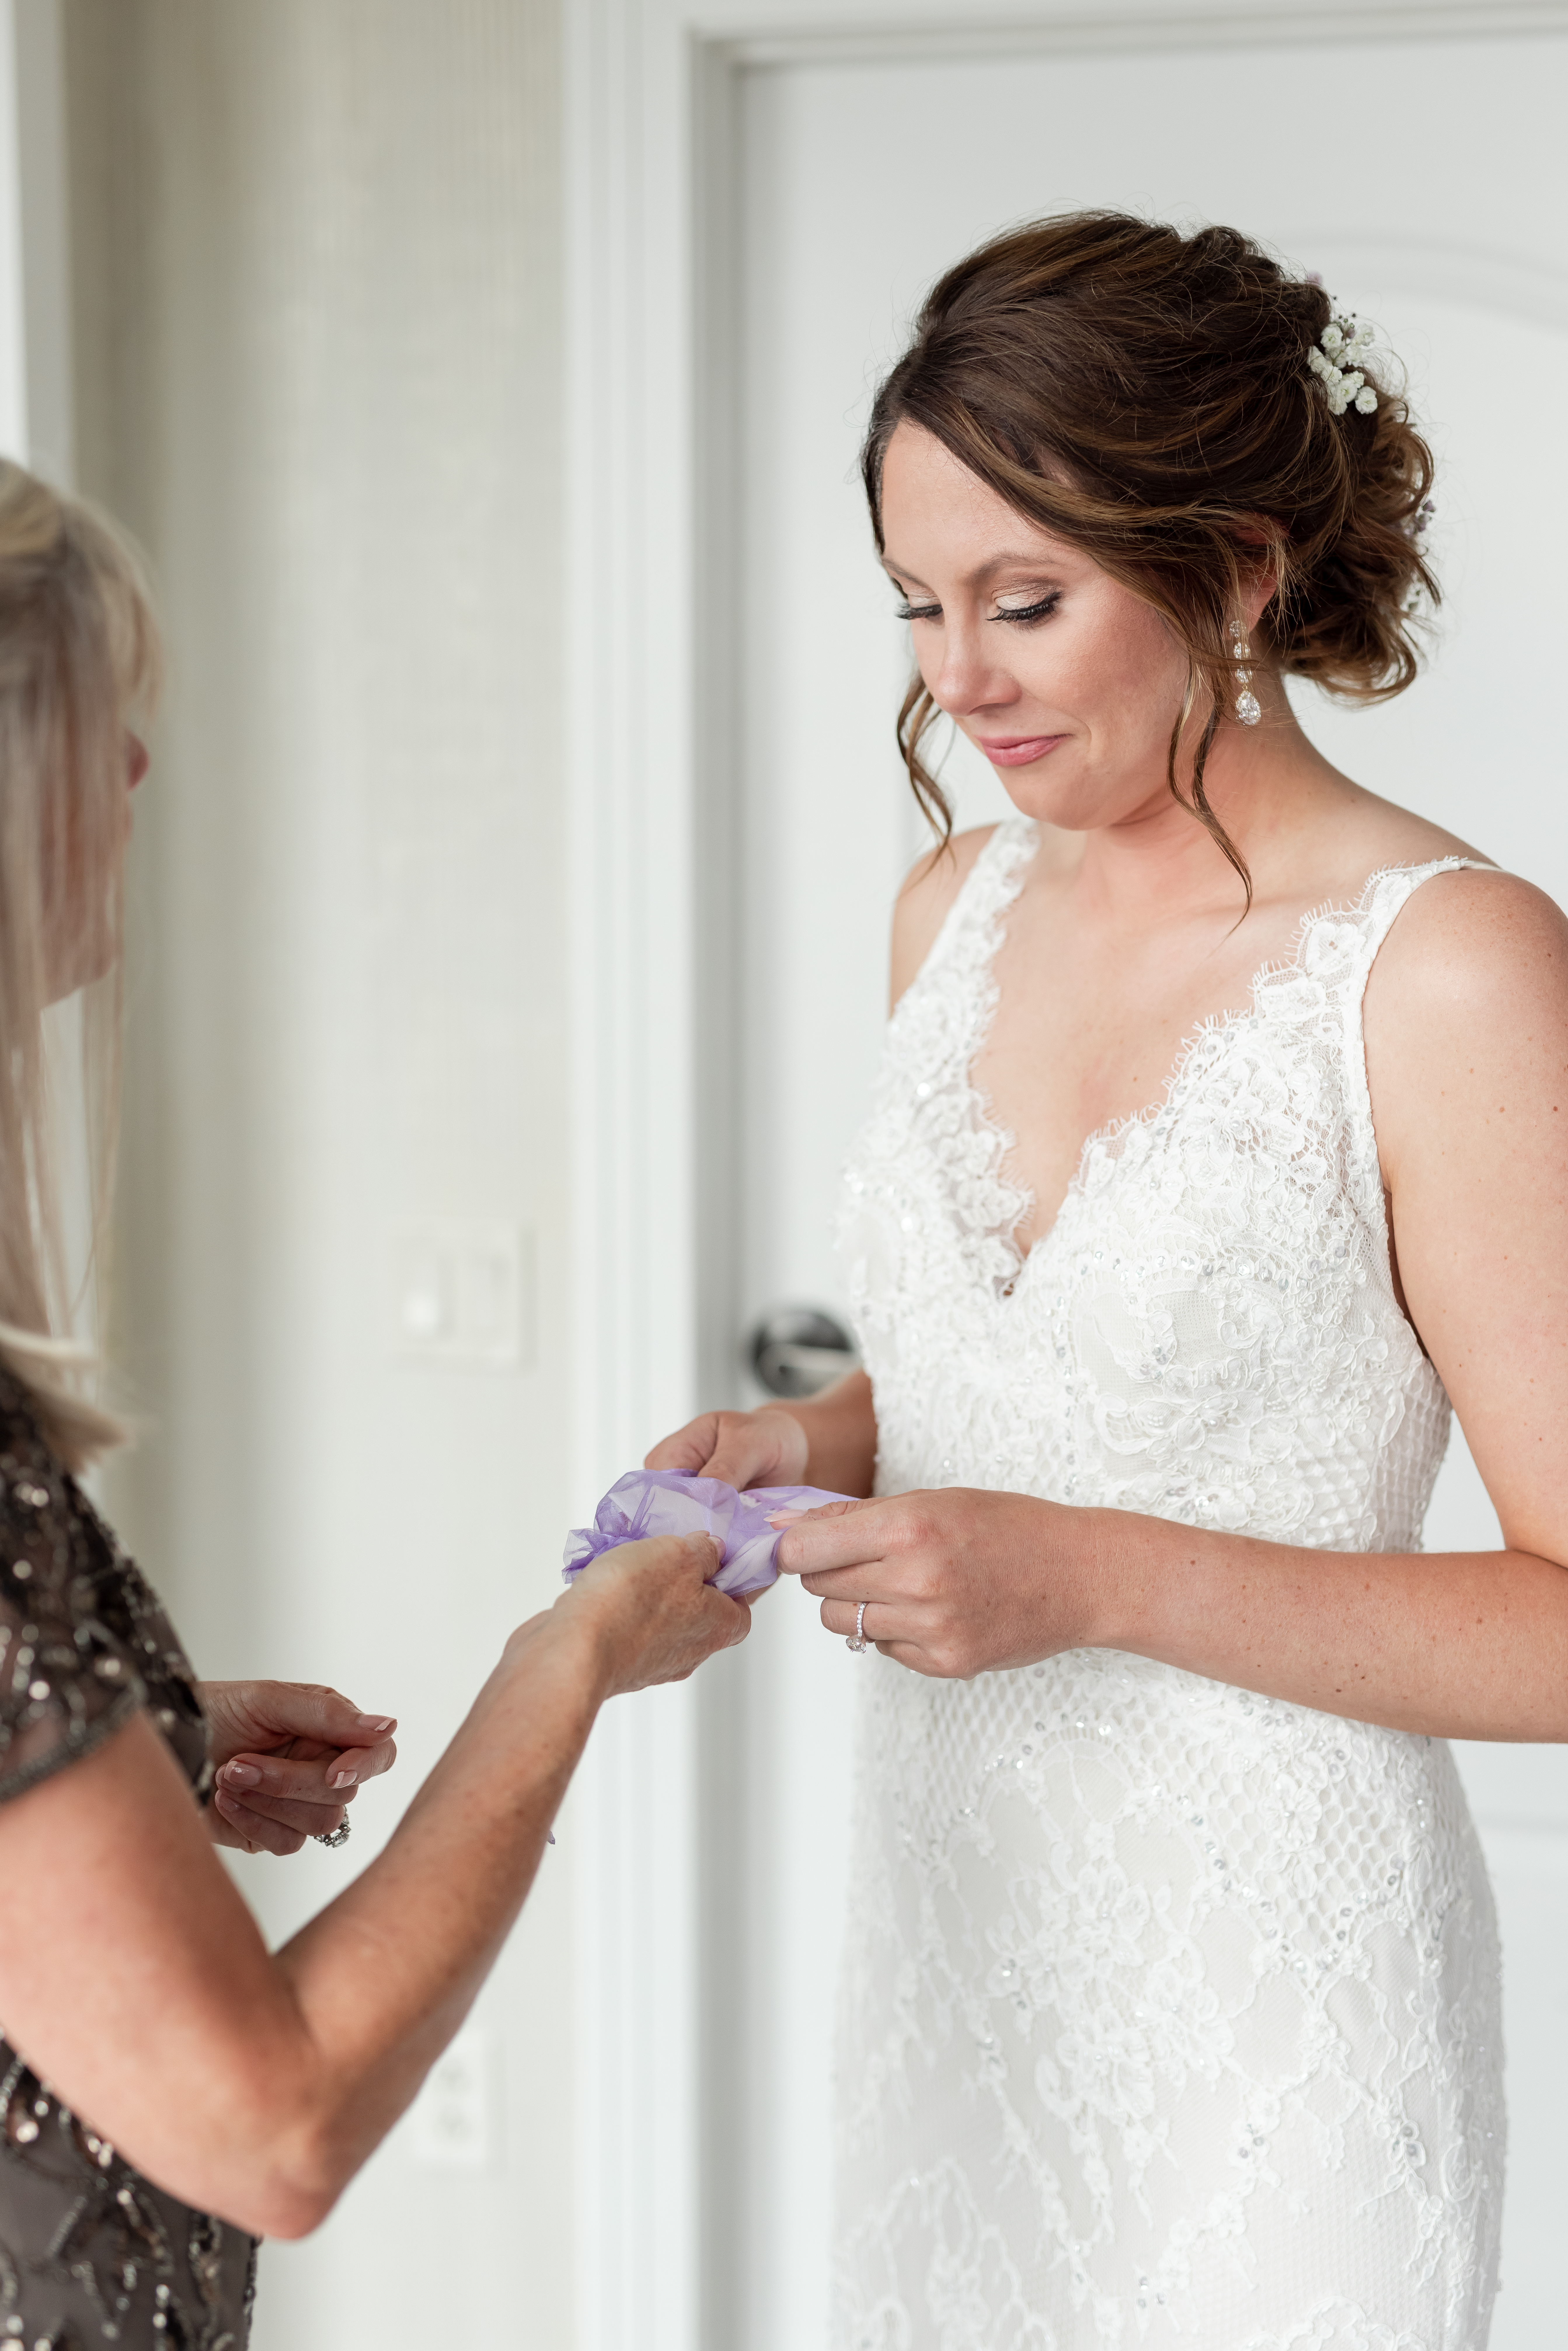 bride-getting-ready-photos-edgewater-hotel-wedding